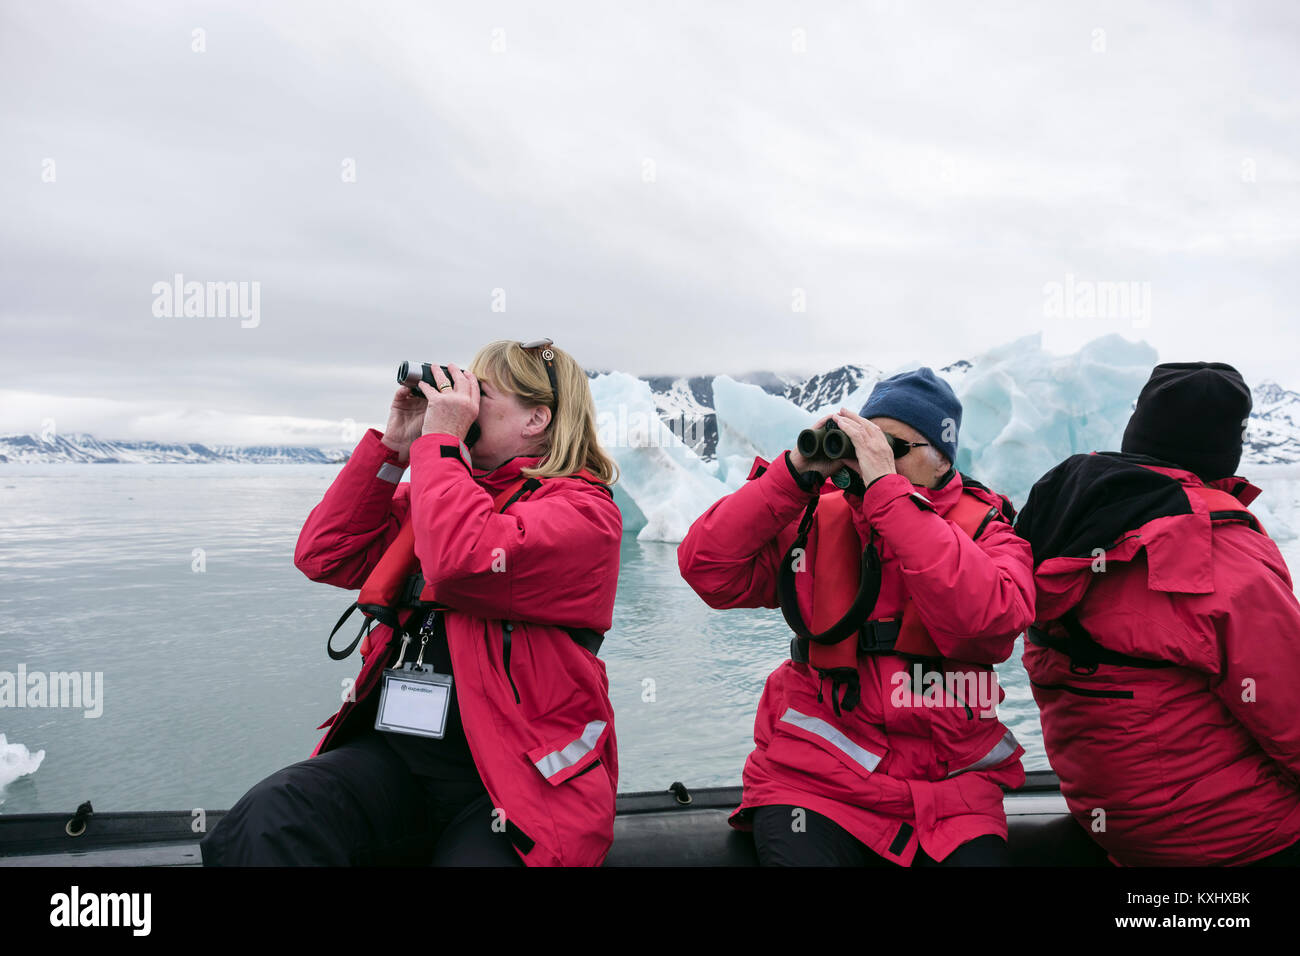 G Adventures passagers de navires de croisière observation de la faune à l'aide de jumelles sur un zodiac canot dans les eaux de l'Arctique glacial. Spitsbergen, Svalbard, Norvège Banque D'Images